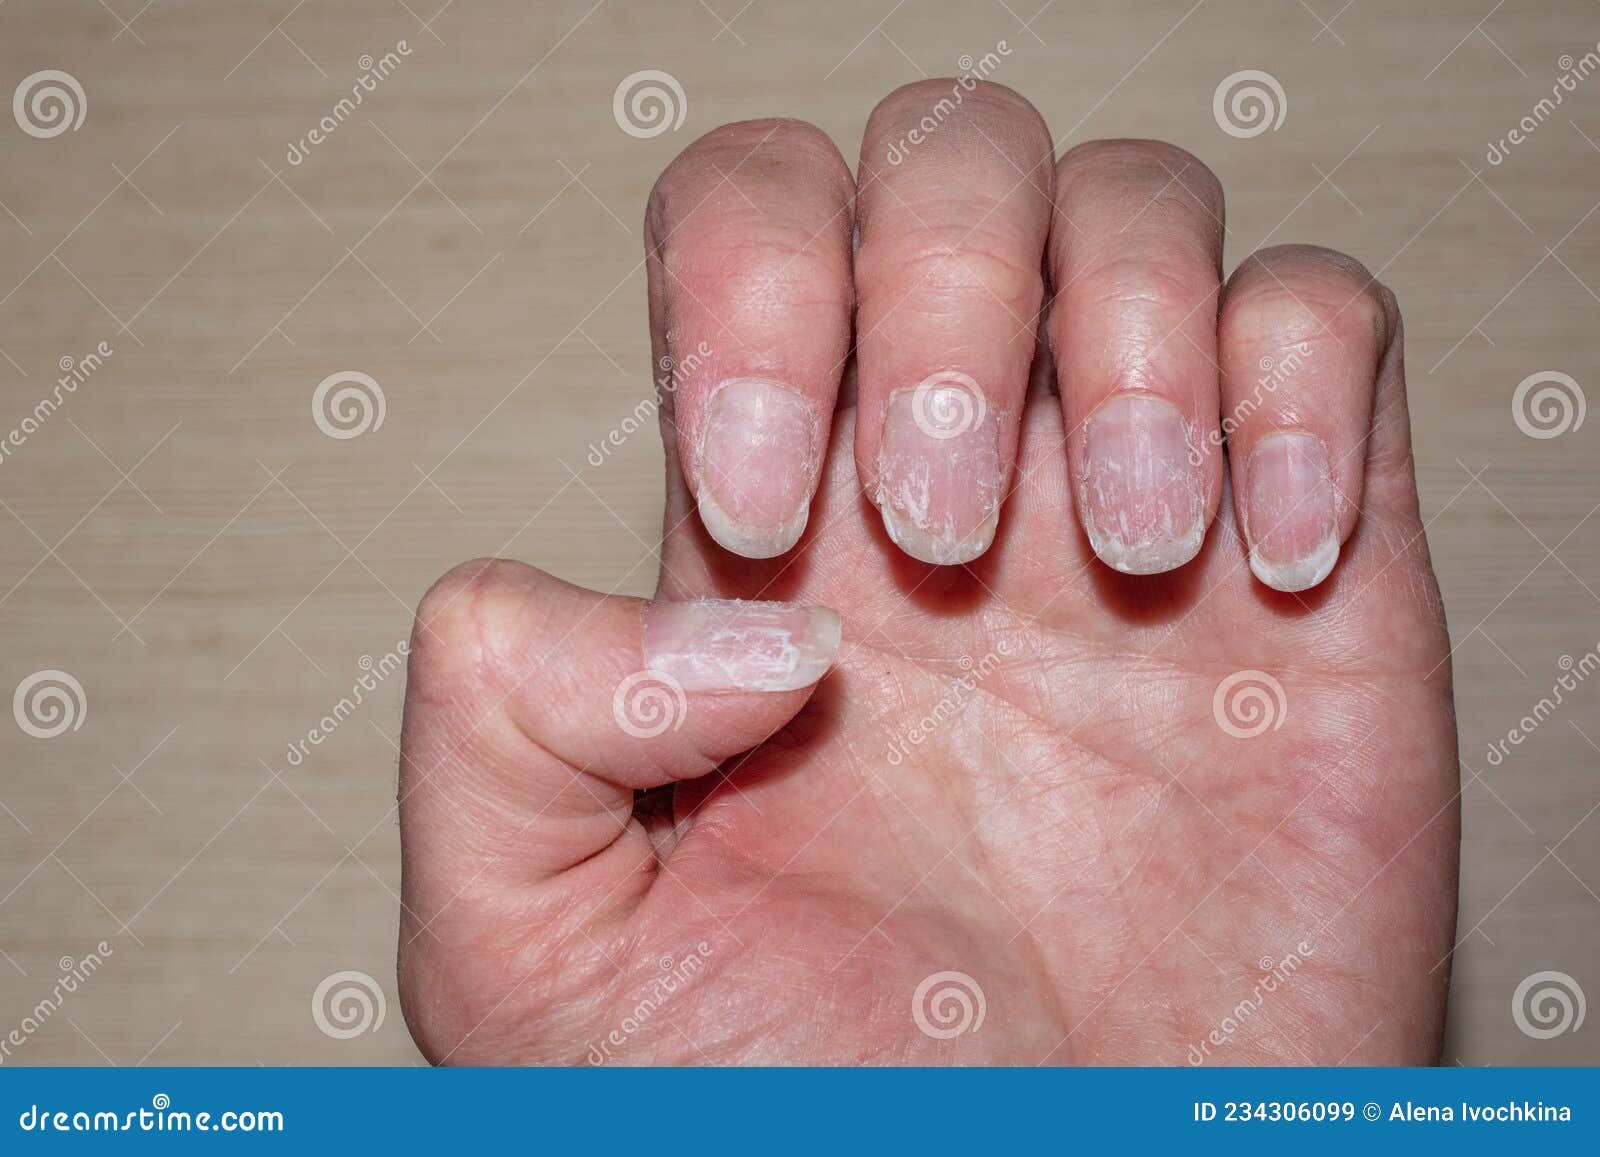 close up bitten brittle nails manicure macro photo vertical ridges fingernails overgrown cuticle fingernails 234306099